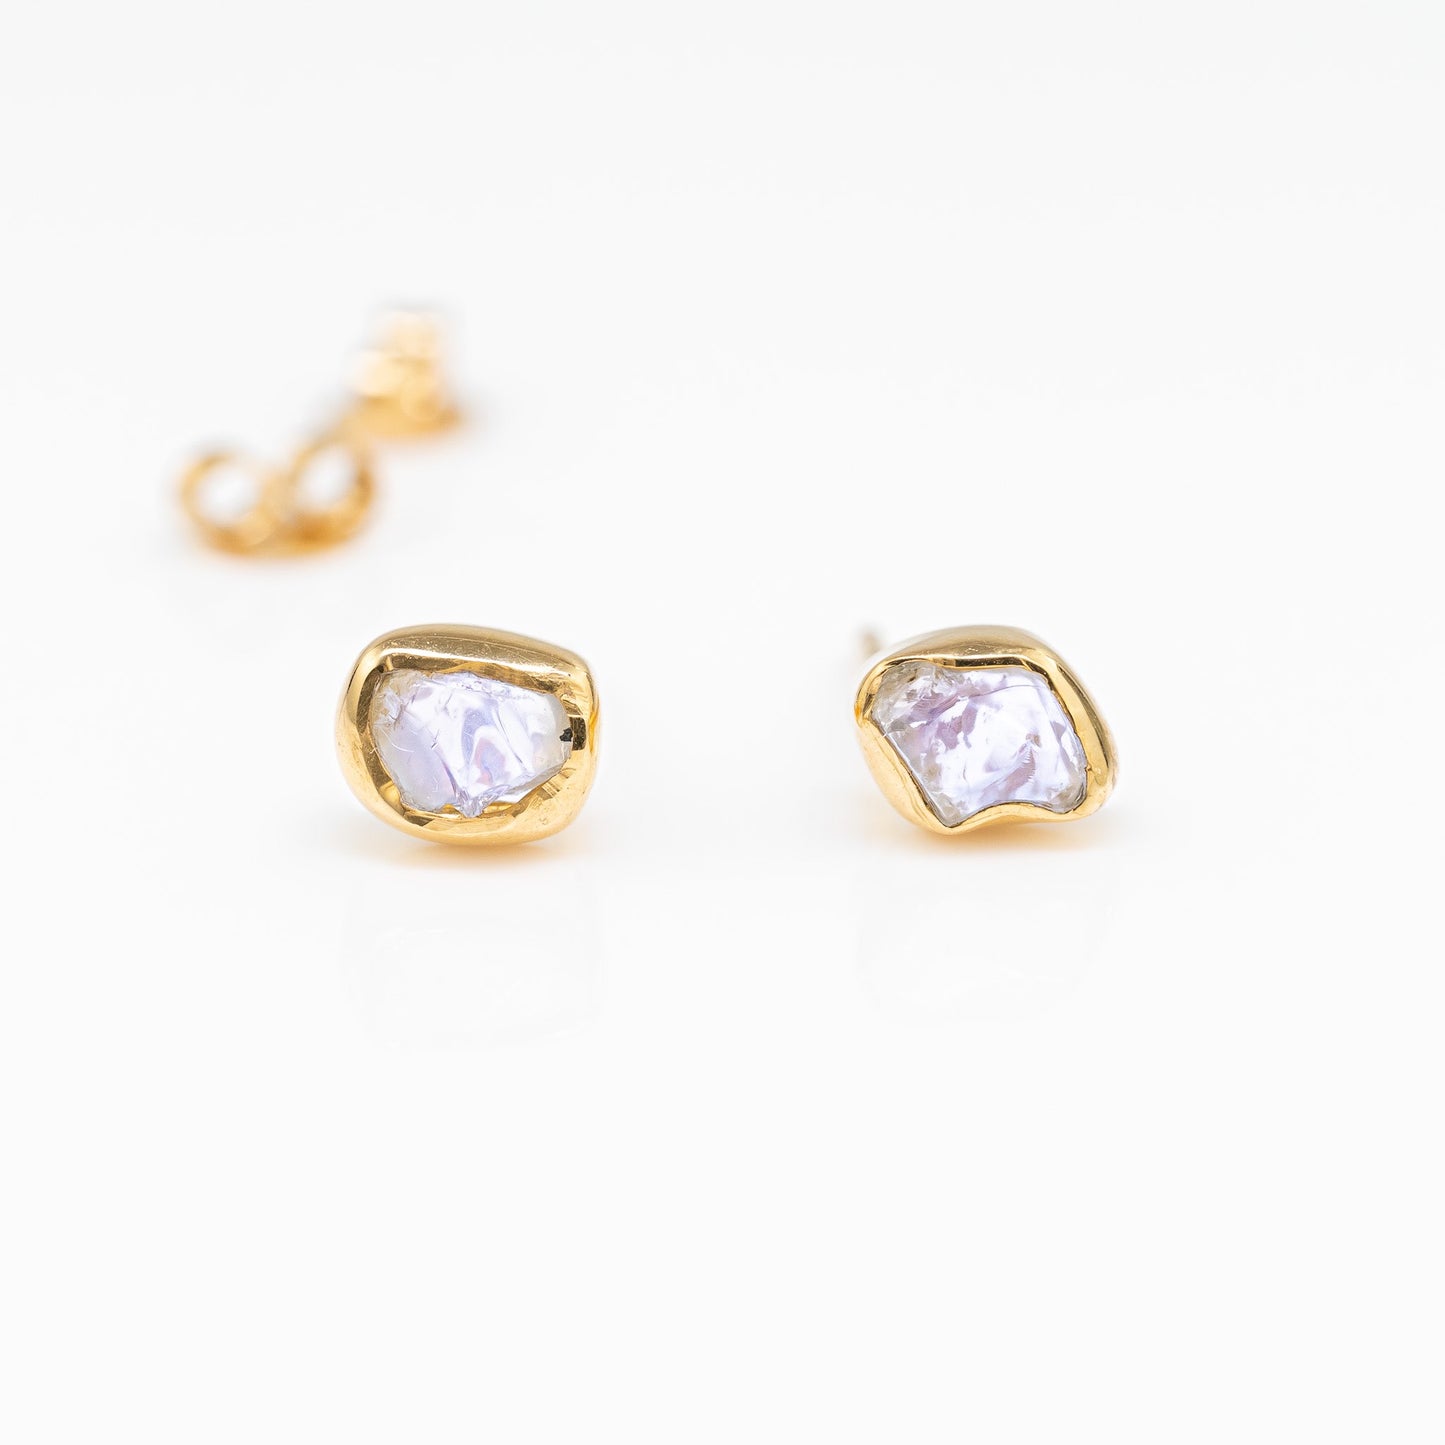 Blue Hued Australian Opal Stud Earrings